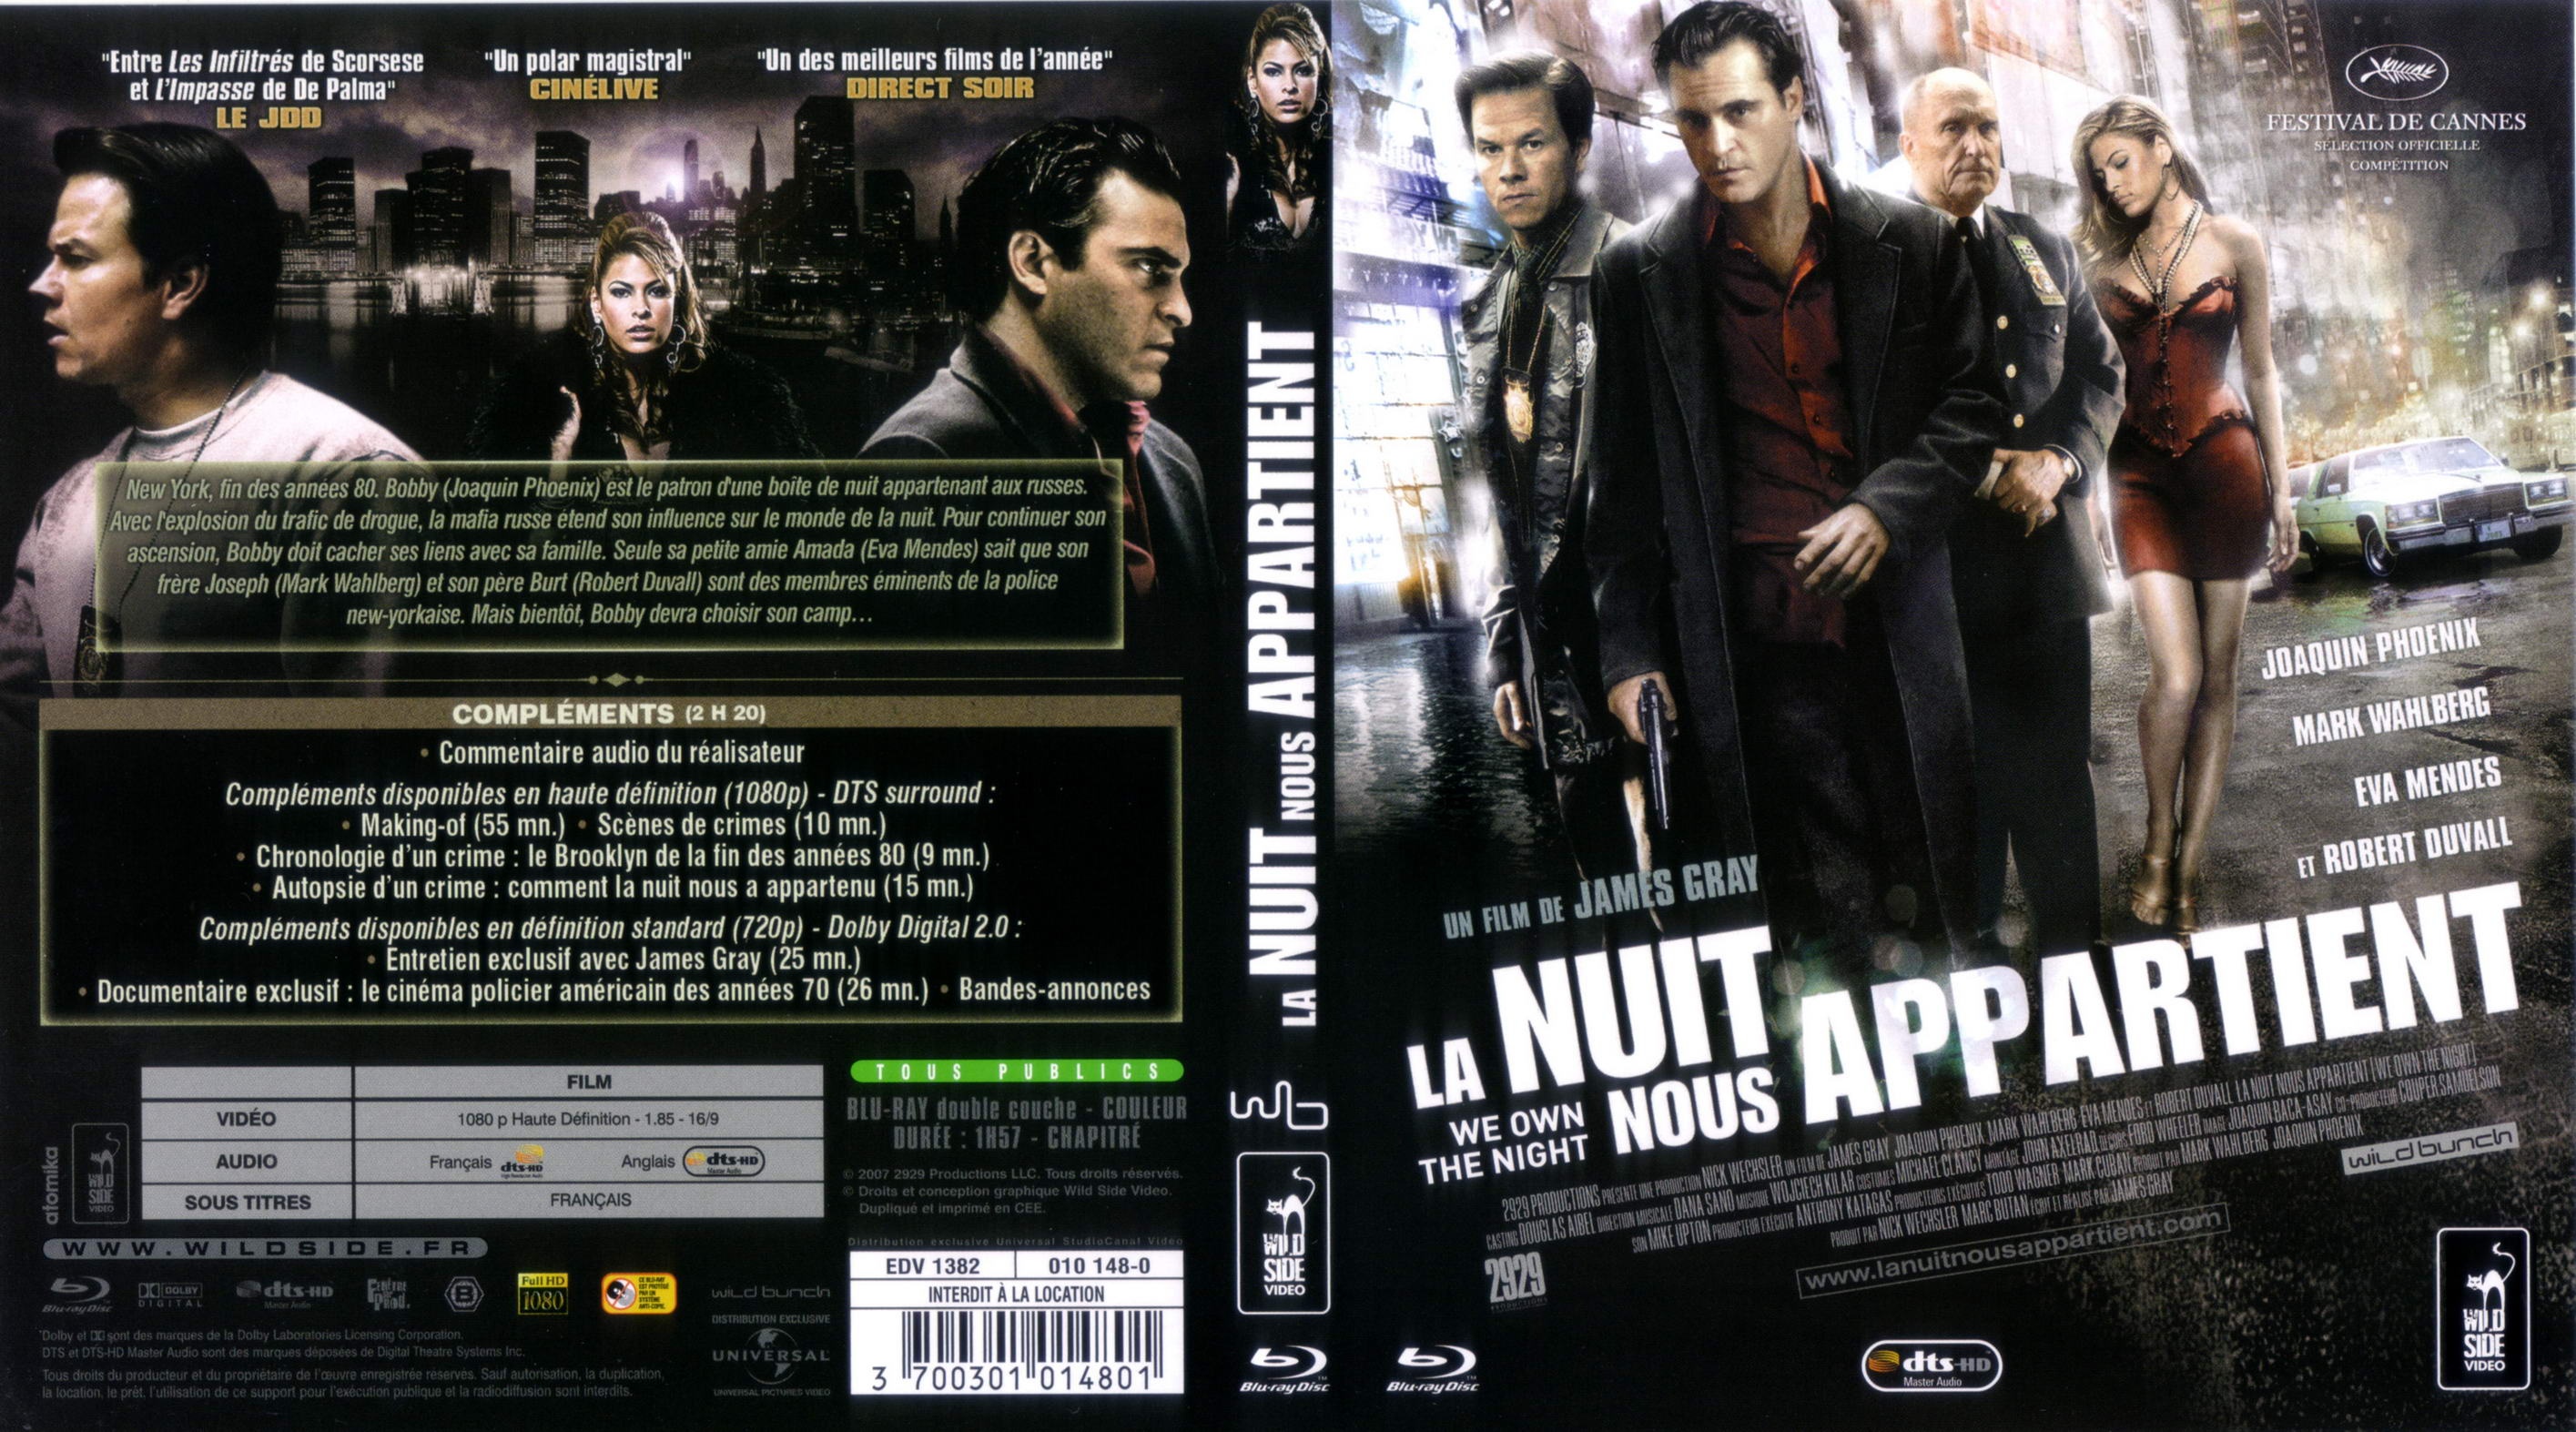 Jaquette DVD La nuit nous appartient (BLU-RAY)